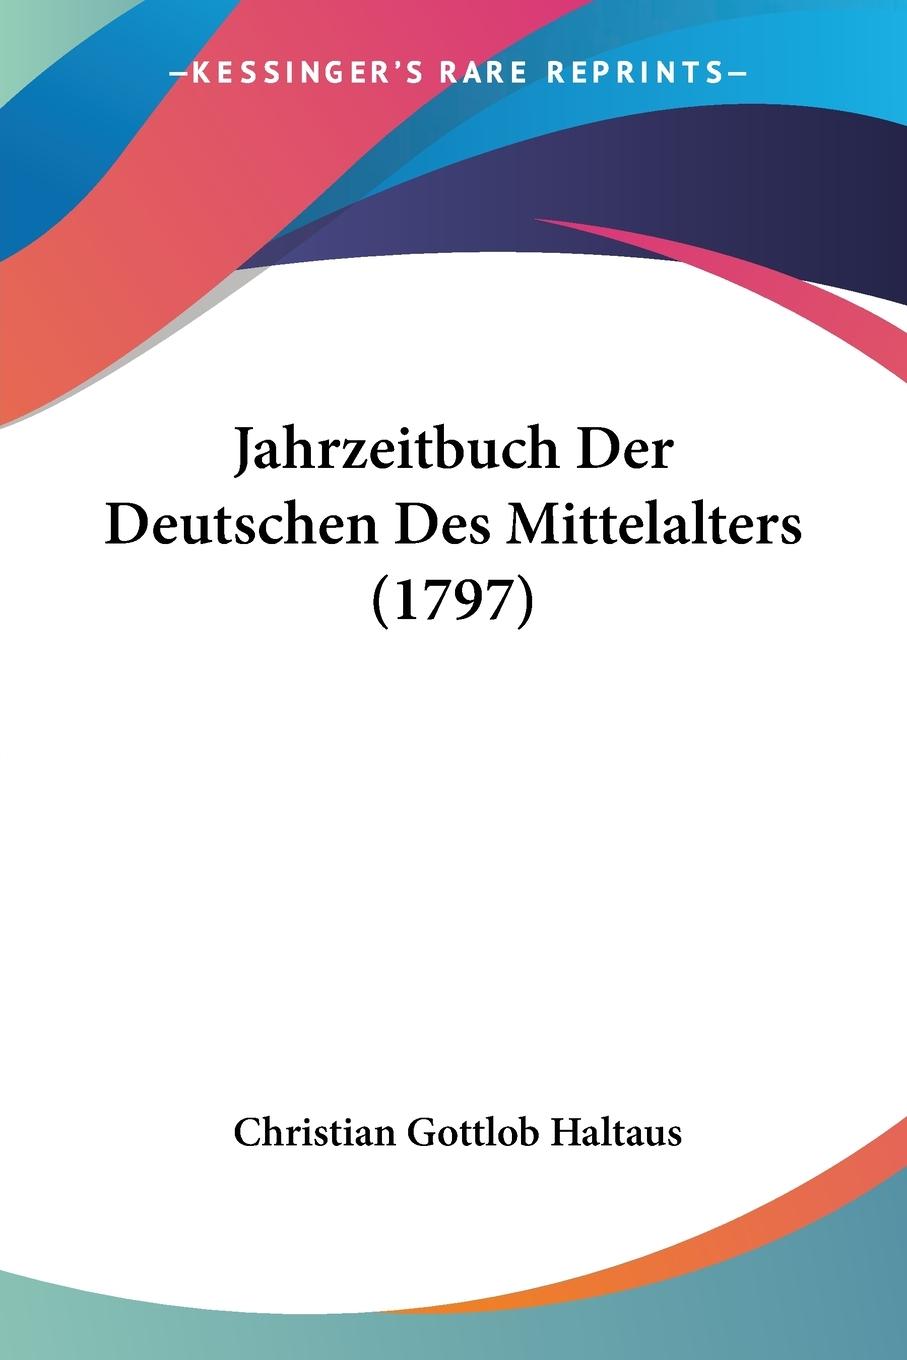 Jahrzeitbuch Der Deutschen Des Mittelalters (1797) - Haltaus, Christian Gottlob